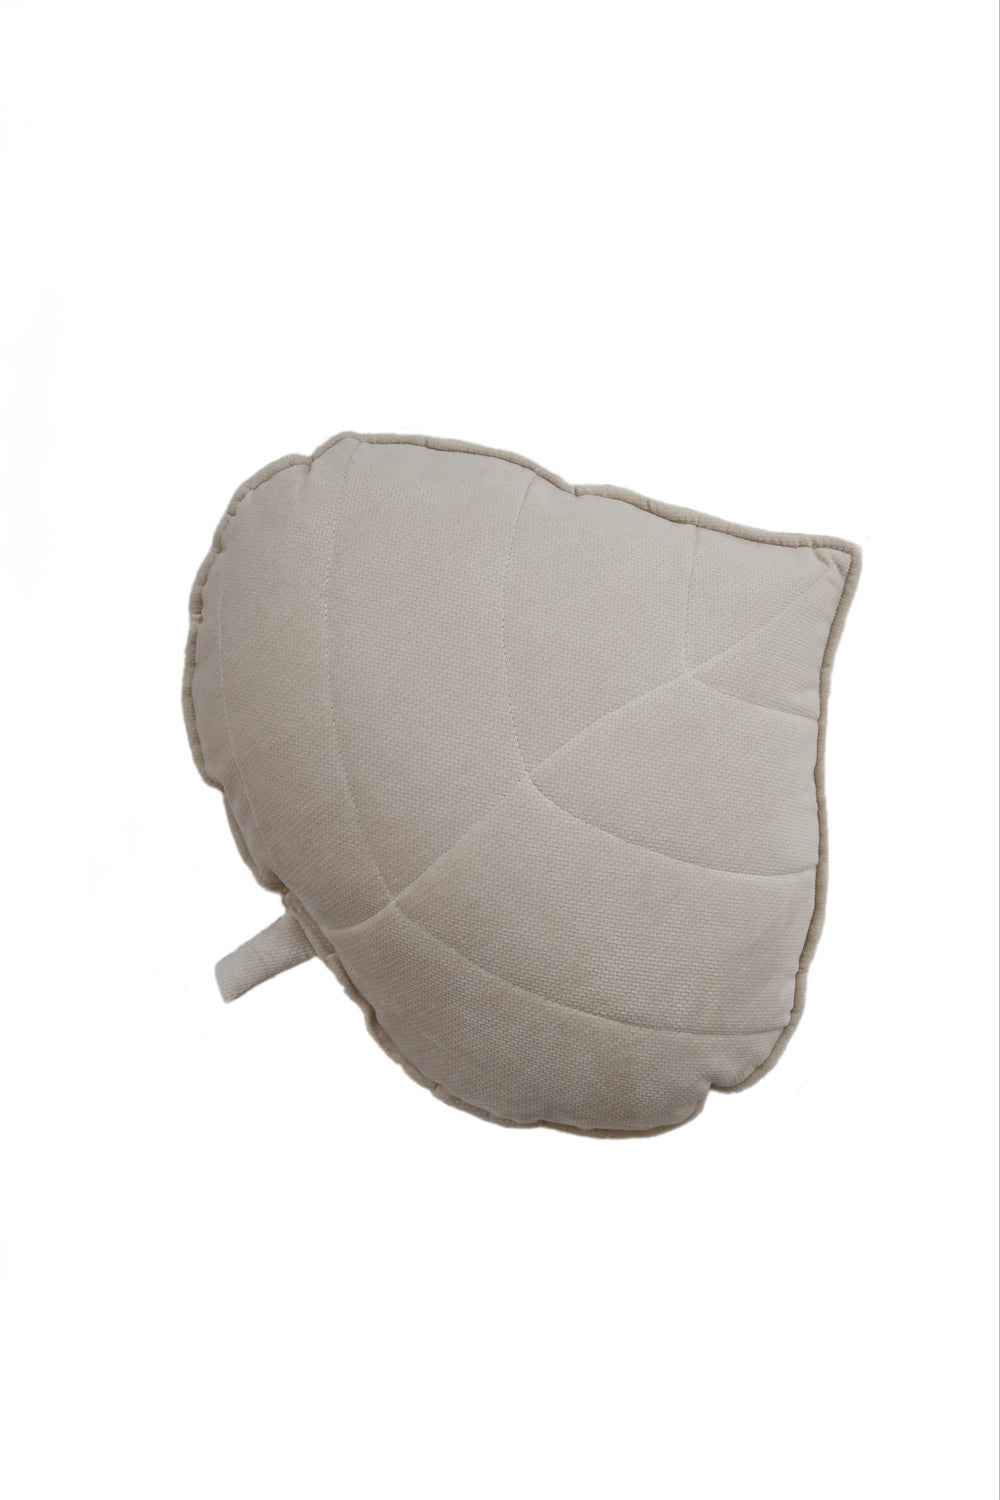 Velvet “Cream” Leaf Pillow